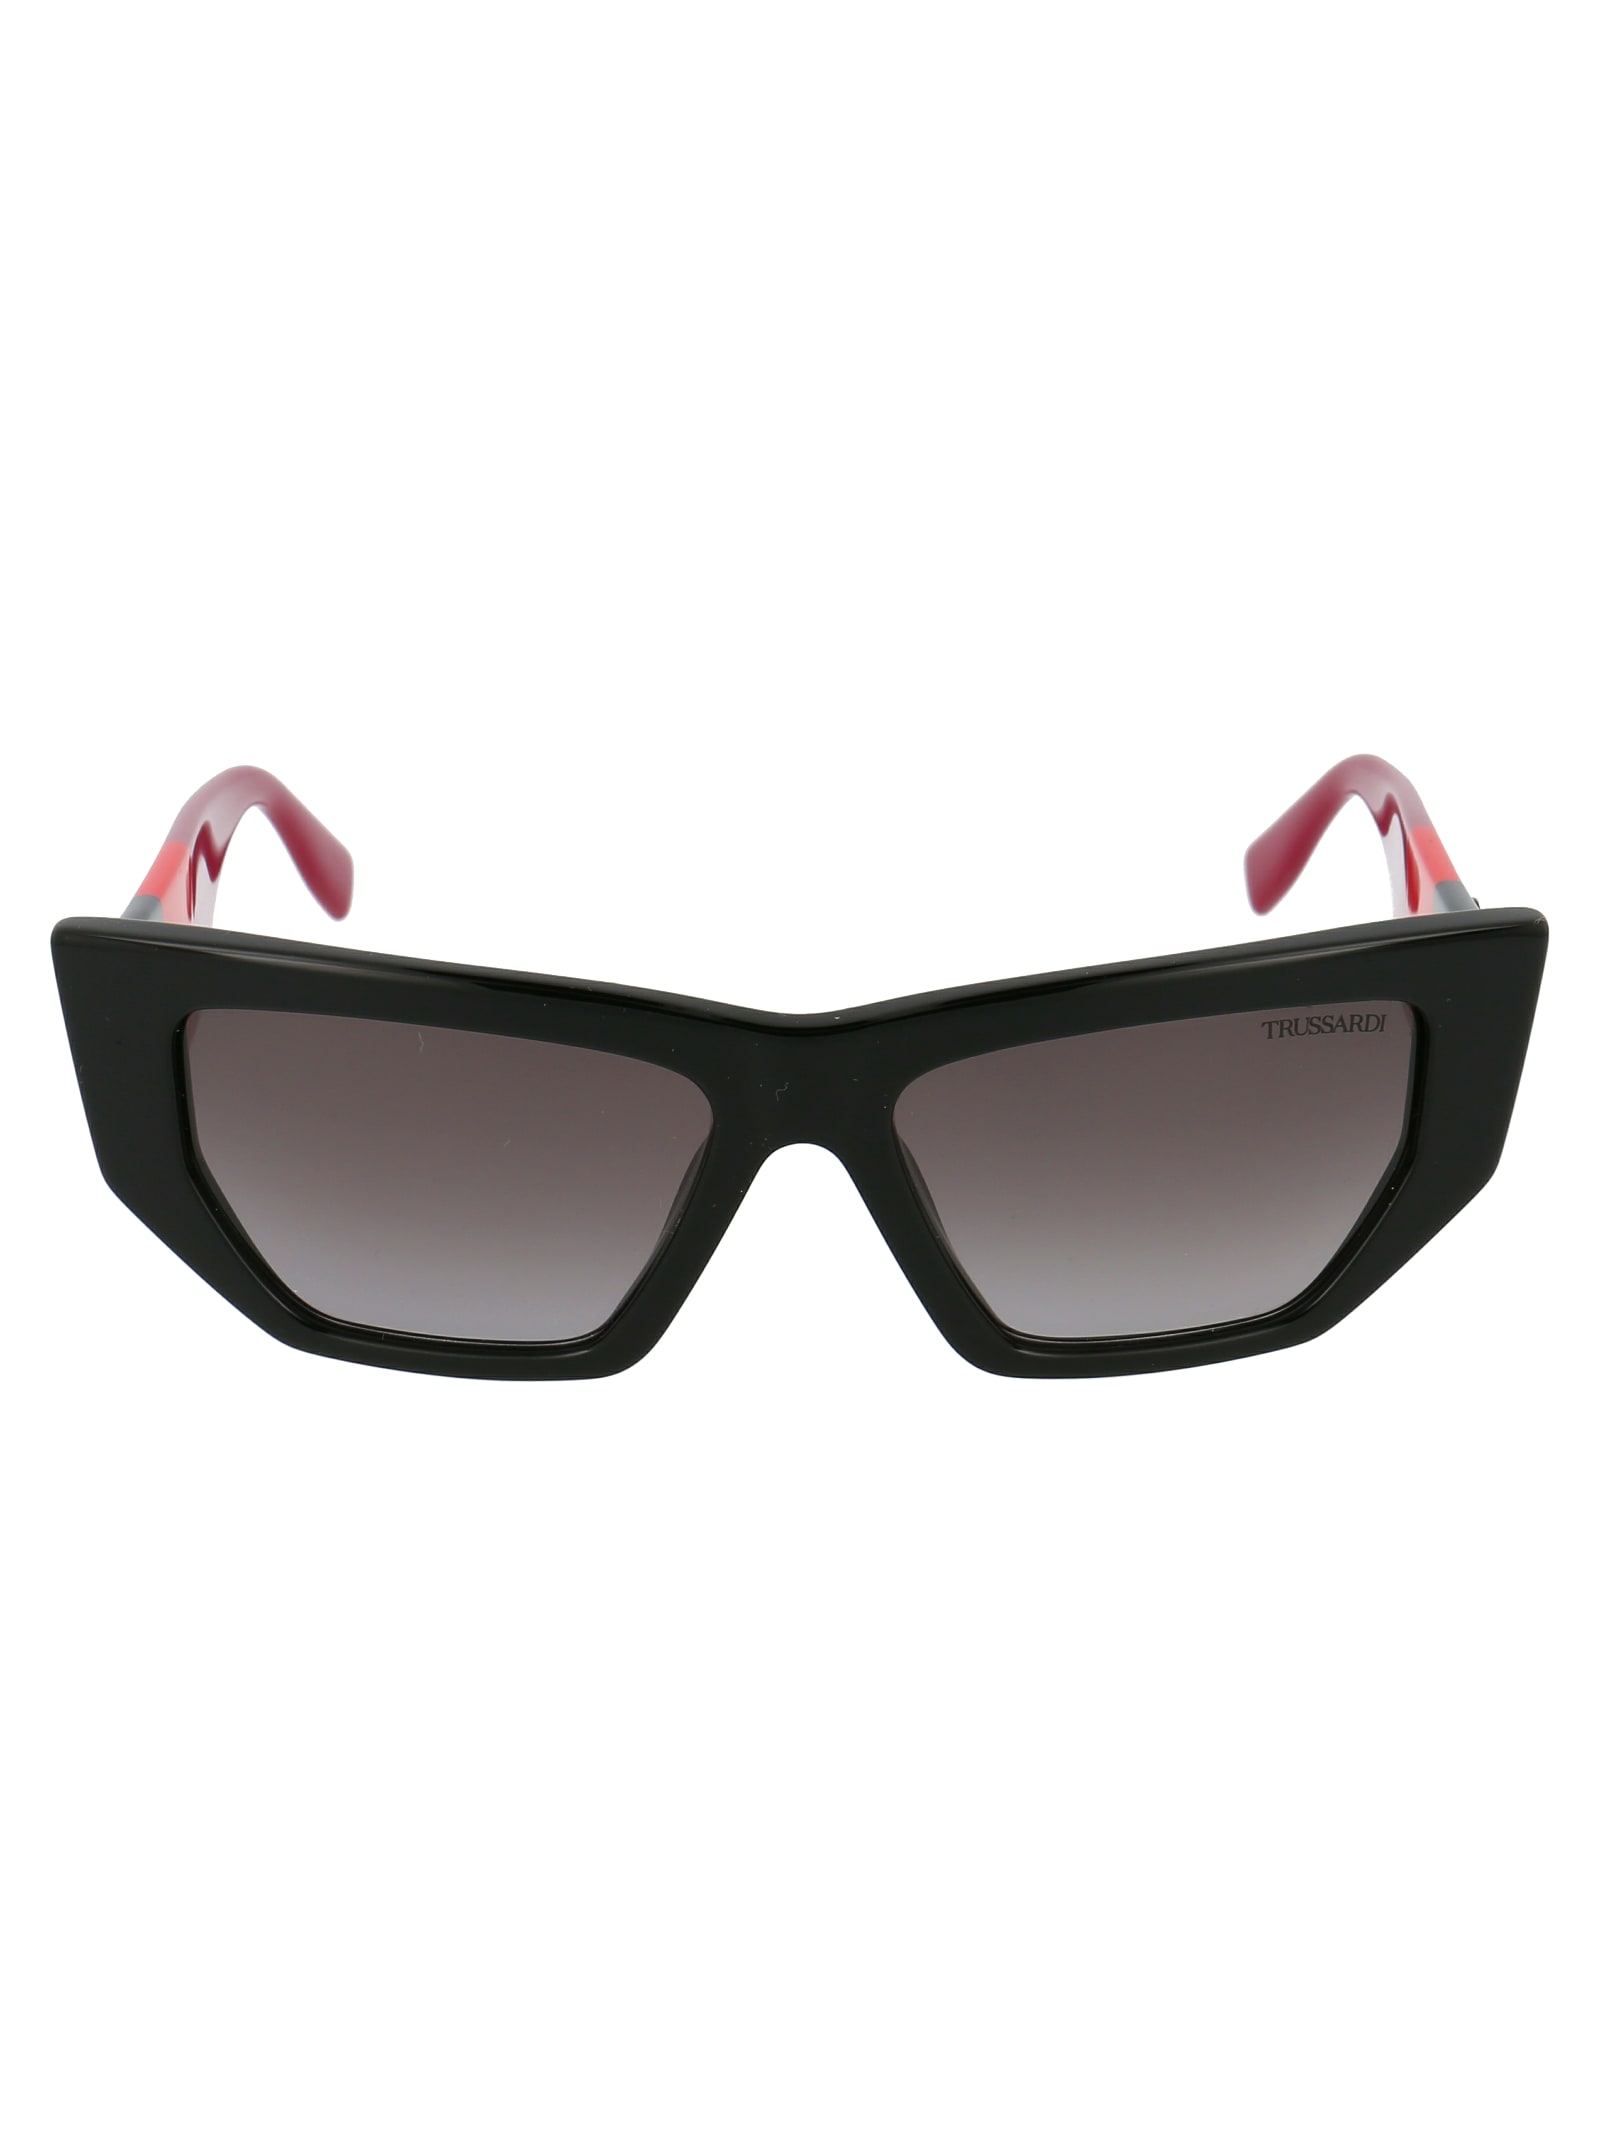 Str377v Sunglasses